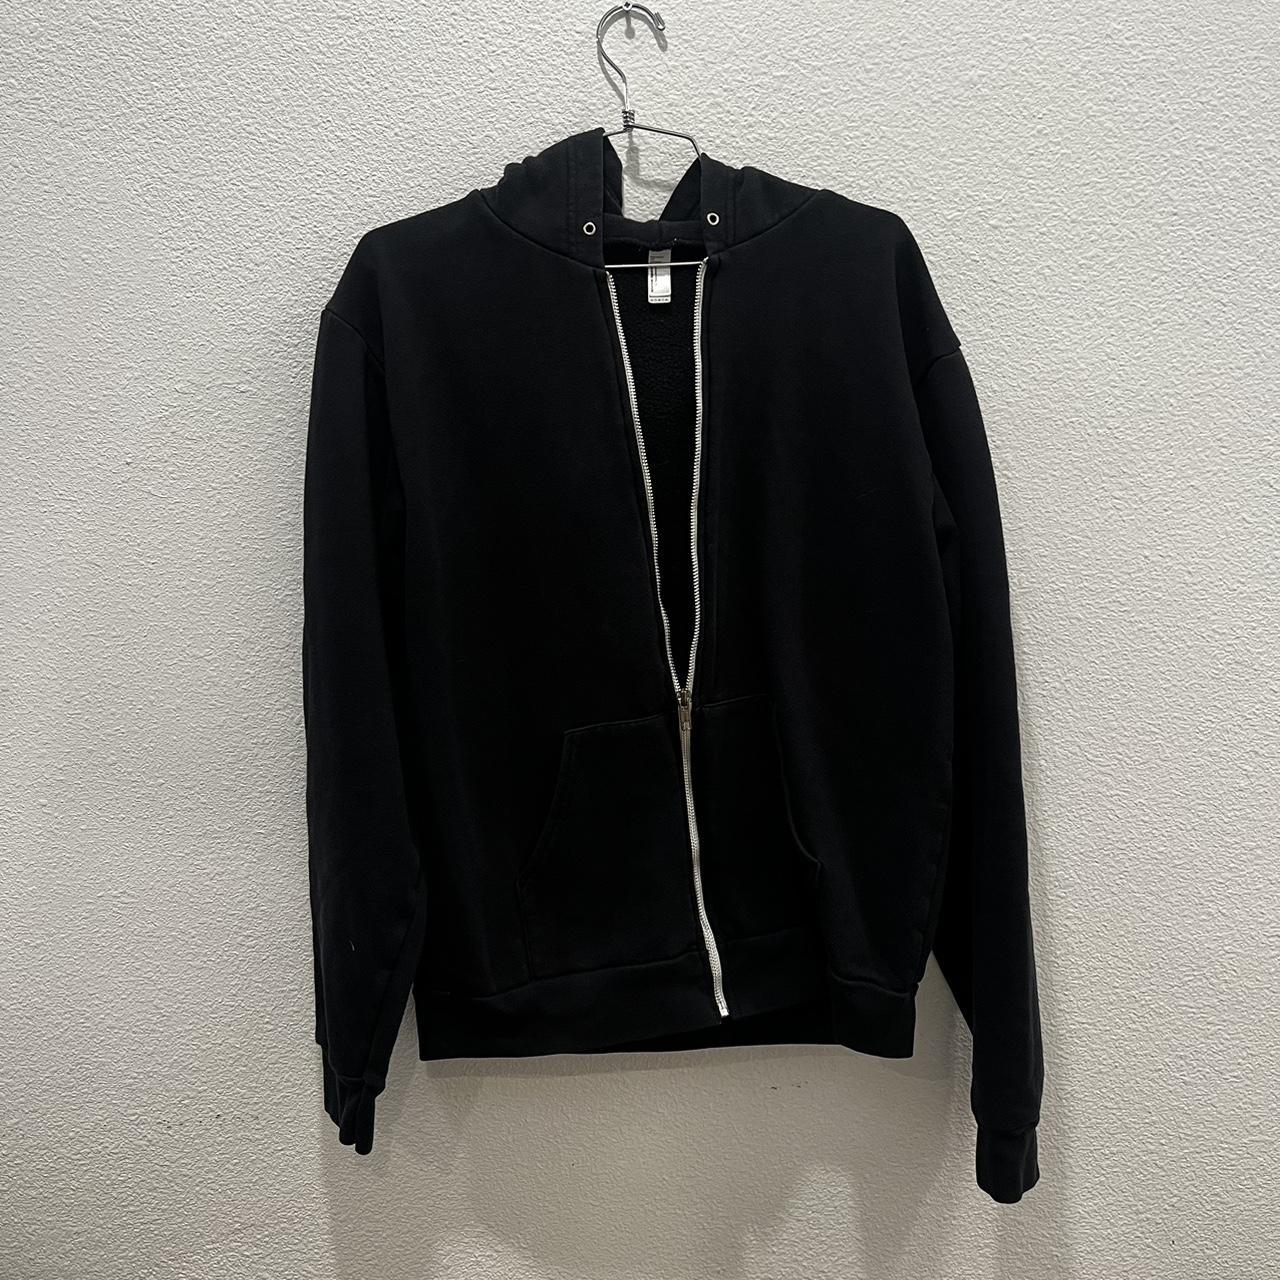 American apparel size large zip up hoodie - Depop